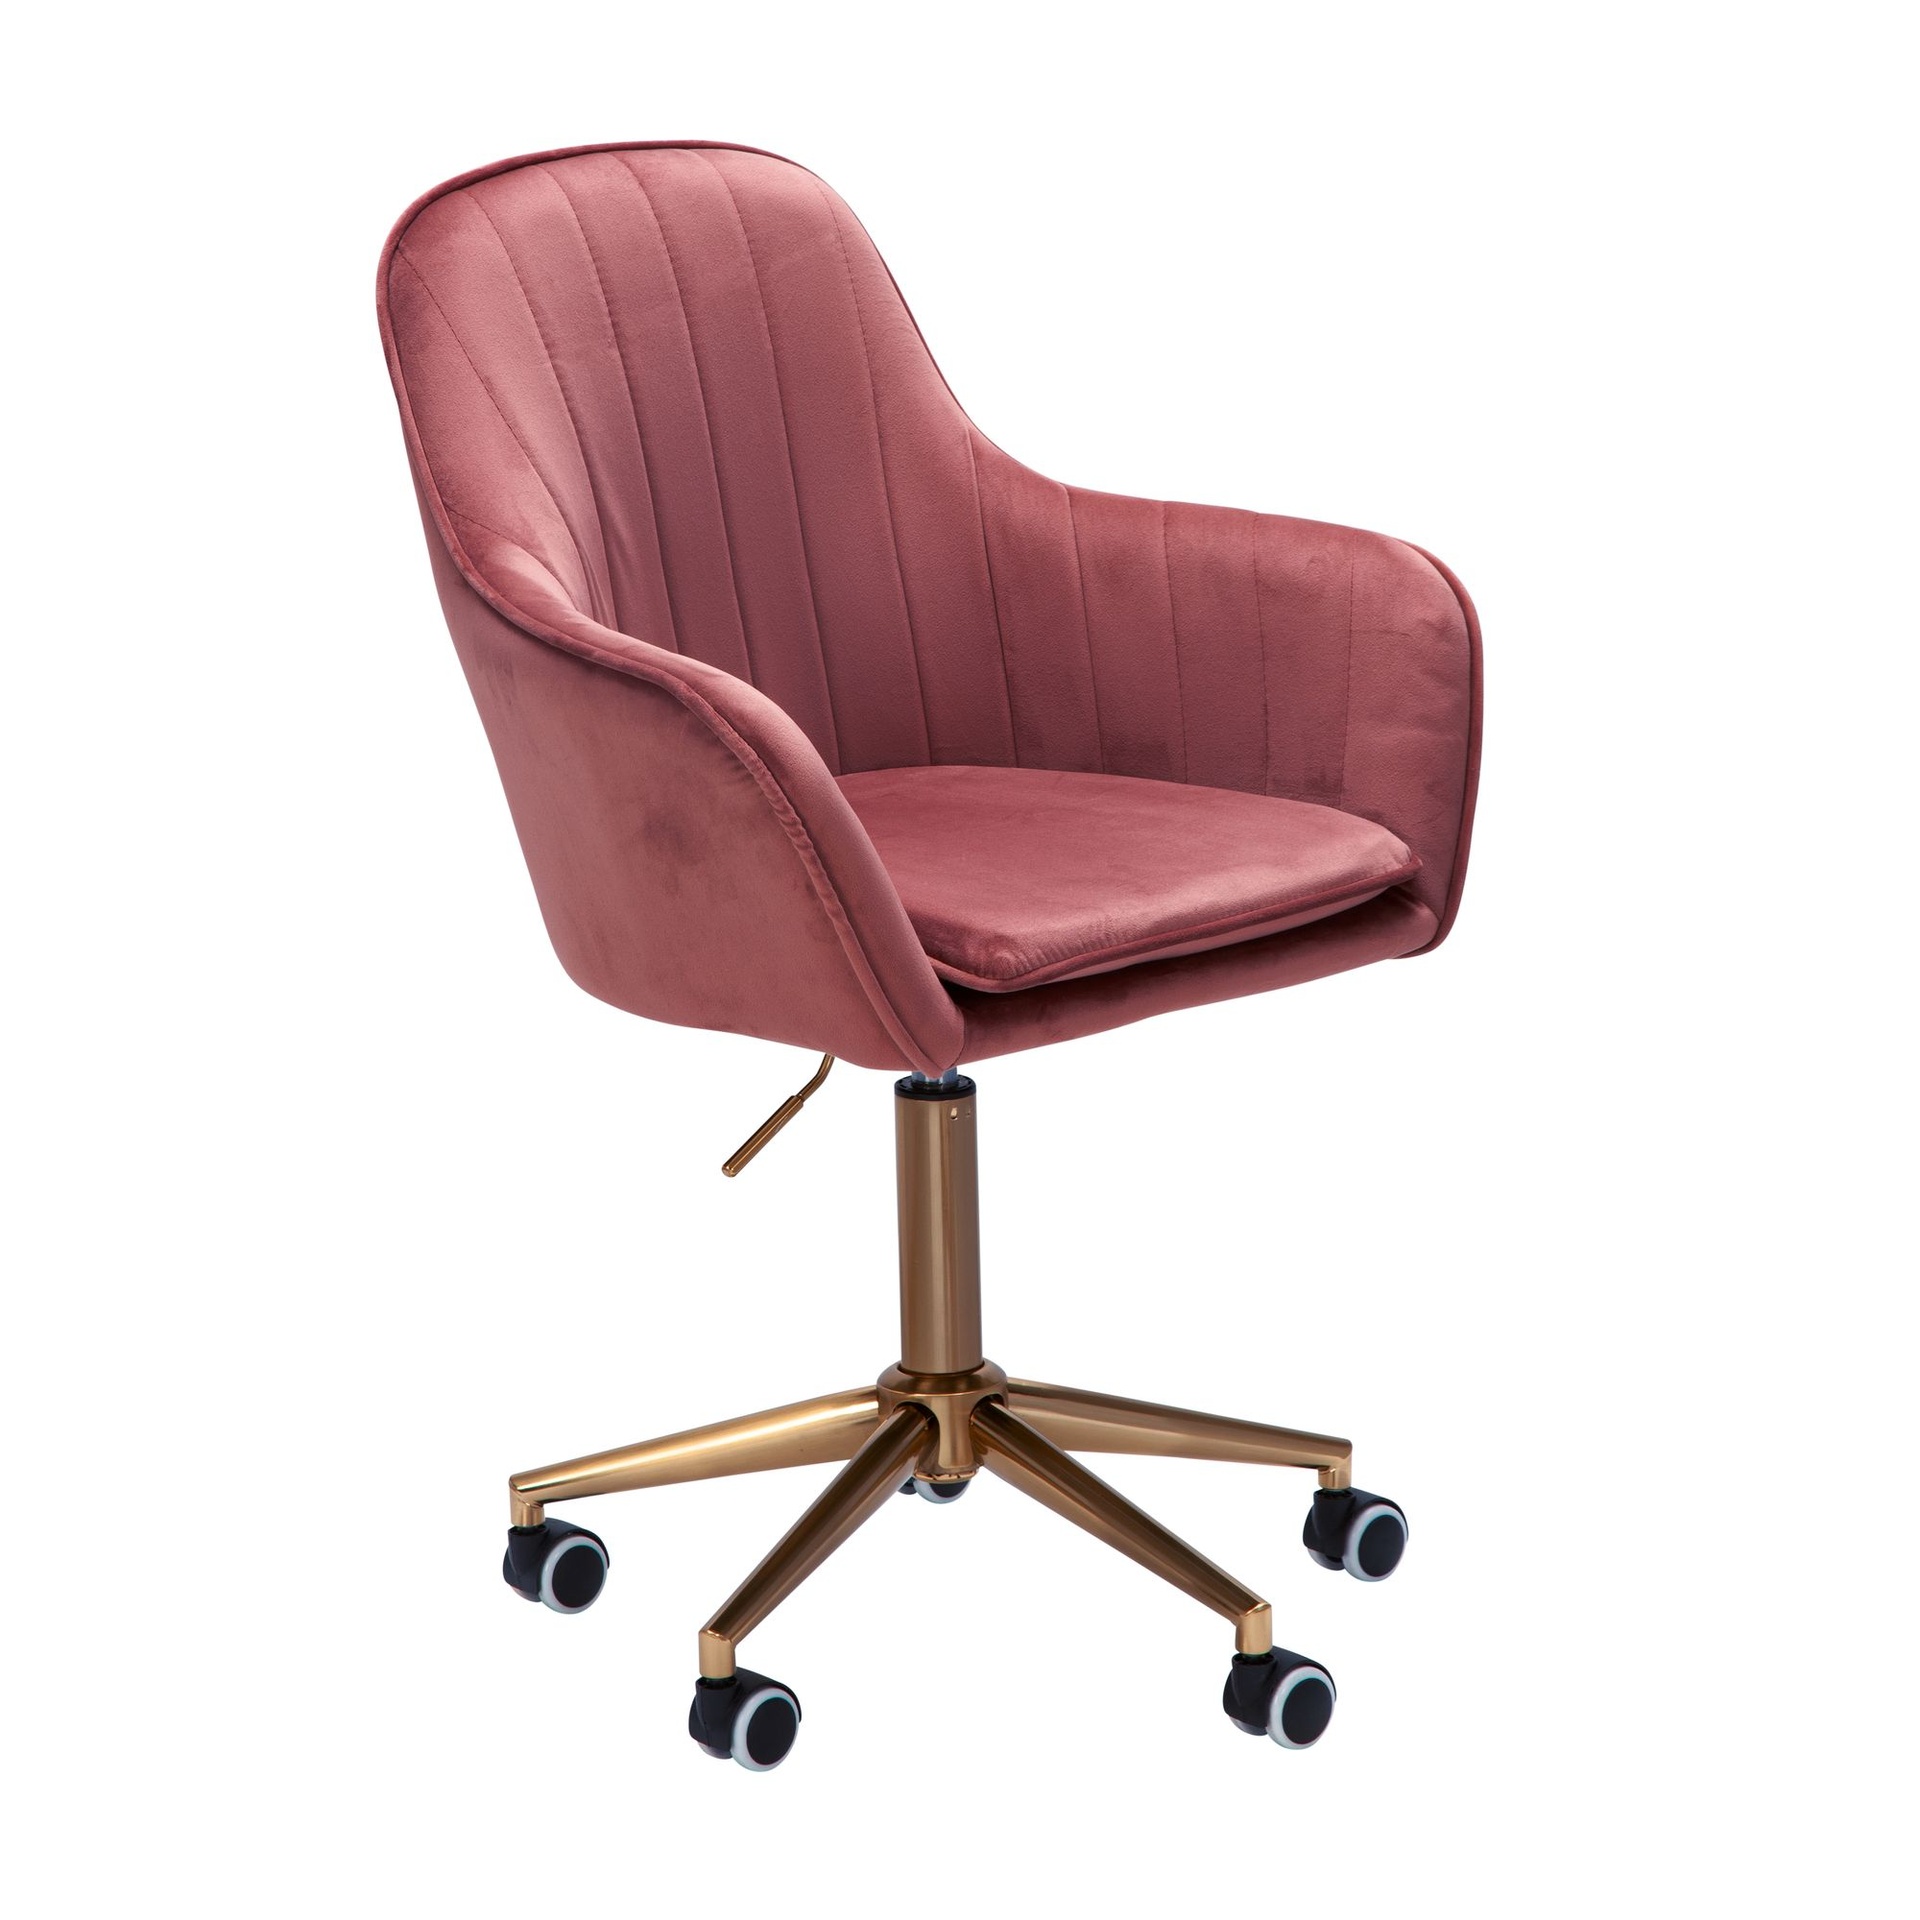 [A09500] Chaise de bureau velours rose, avec dossier, réglable en hauteur jusqu'à 120 kg, avec roulettes, pivotante